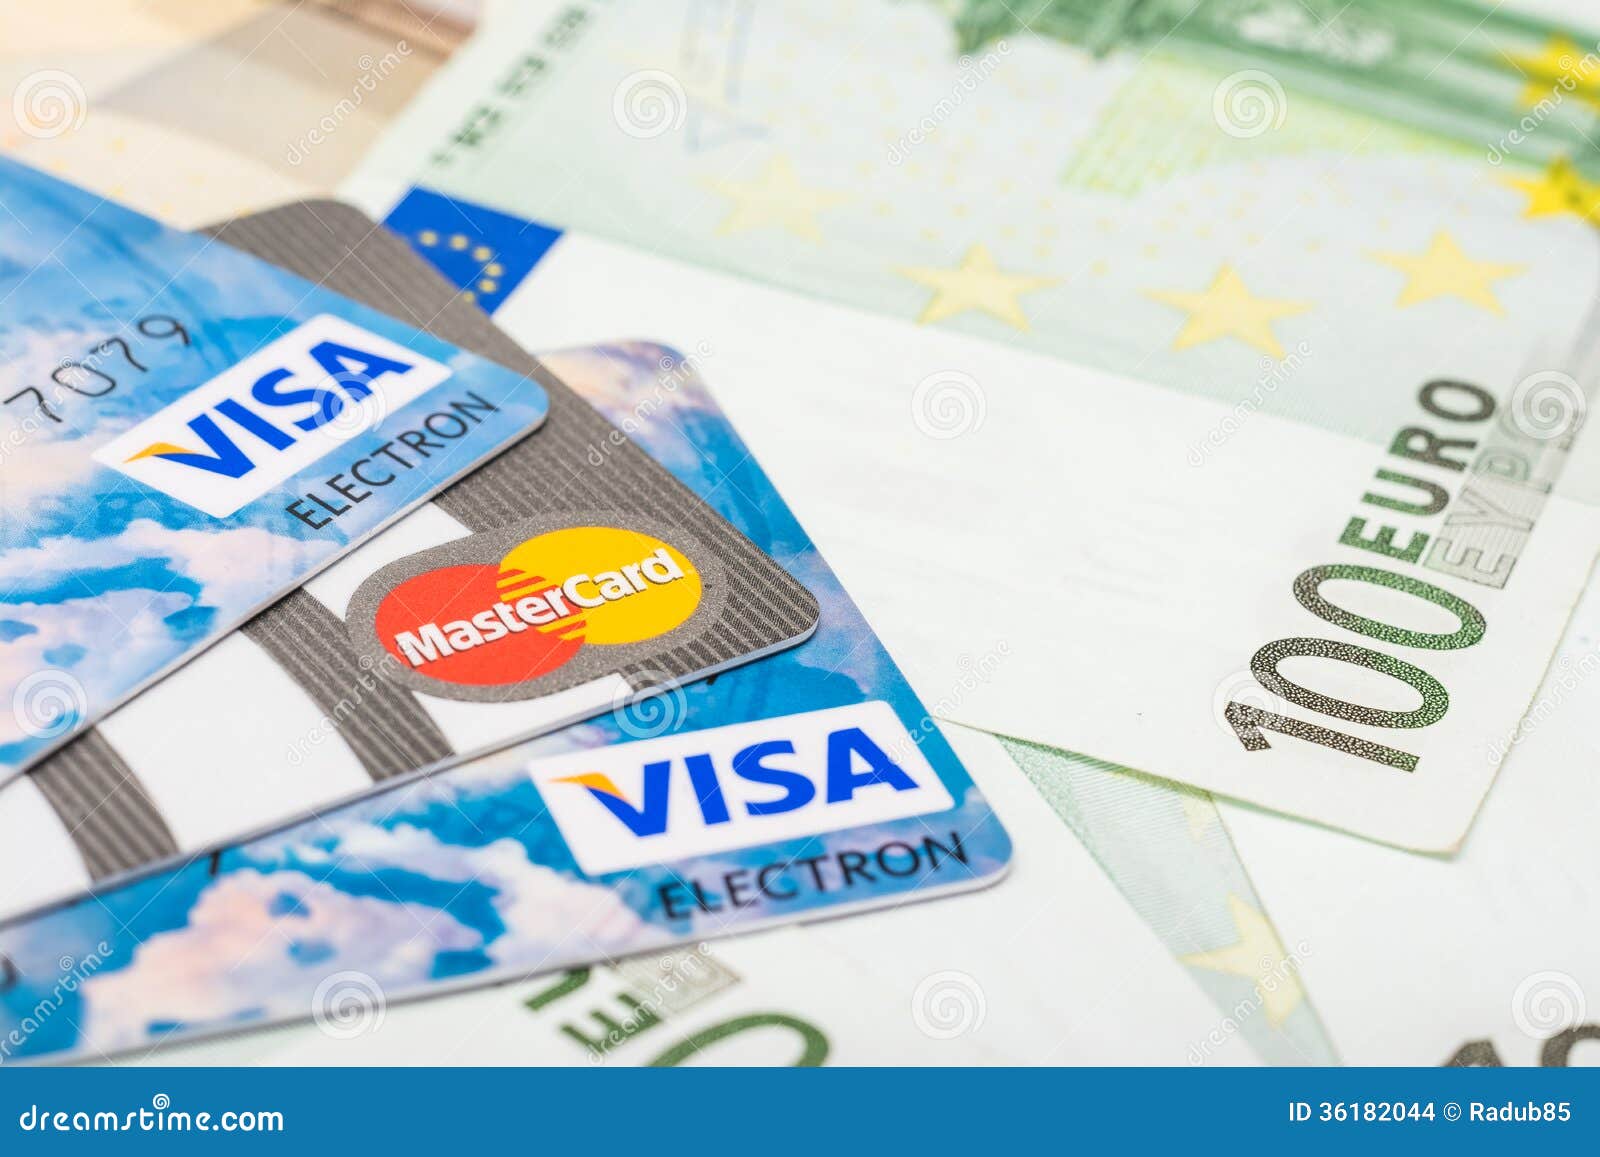 Mastercard euro epese